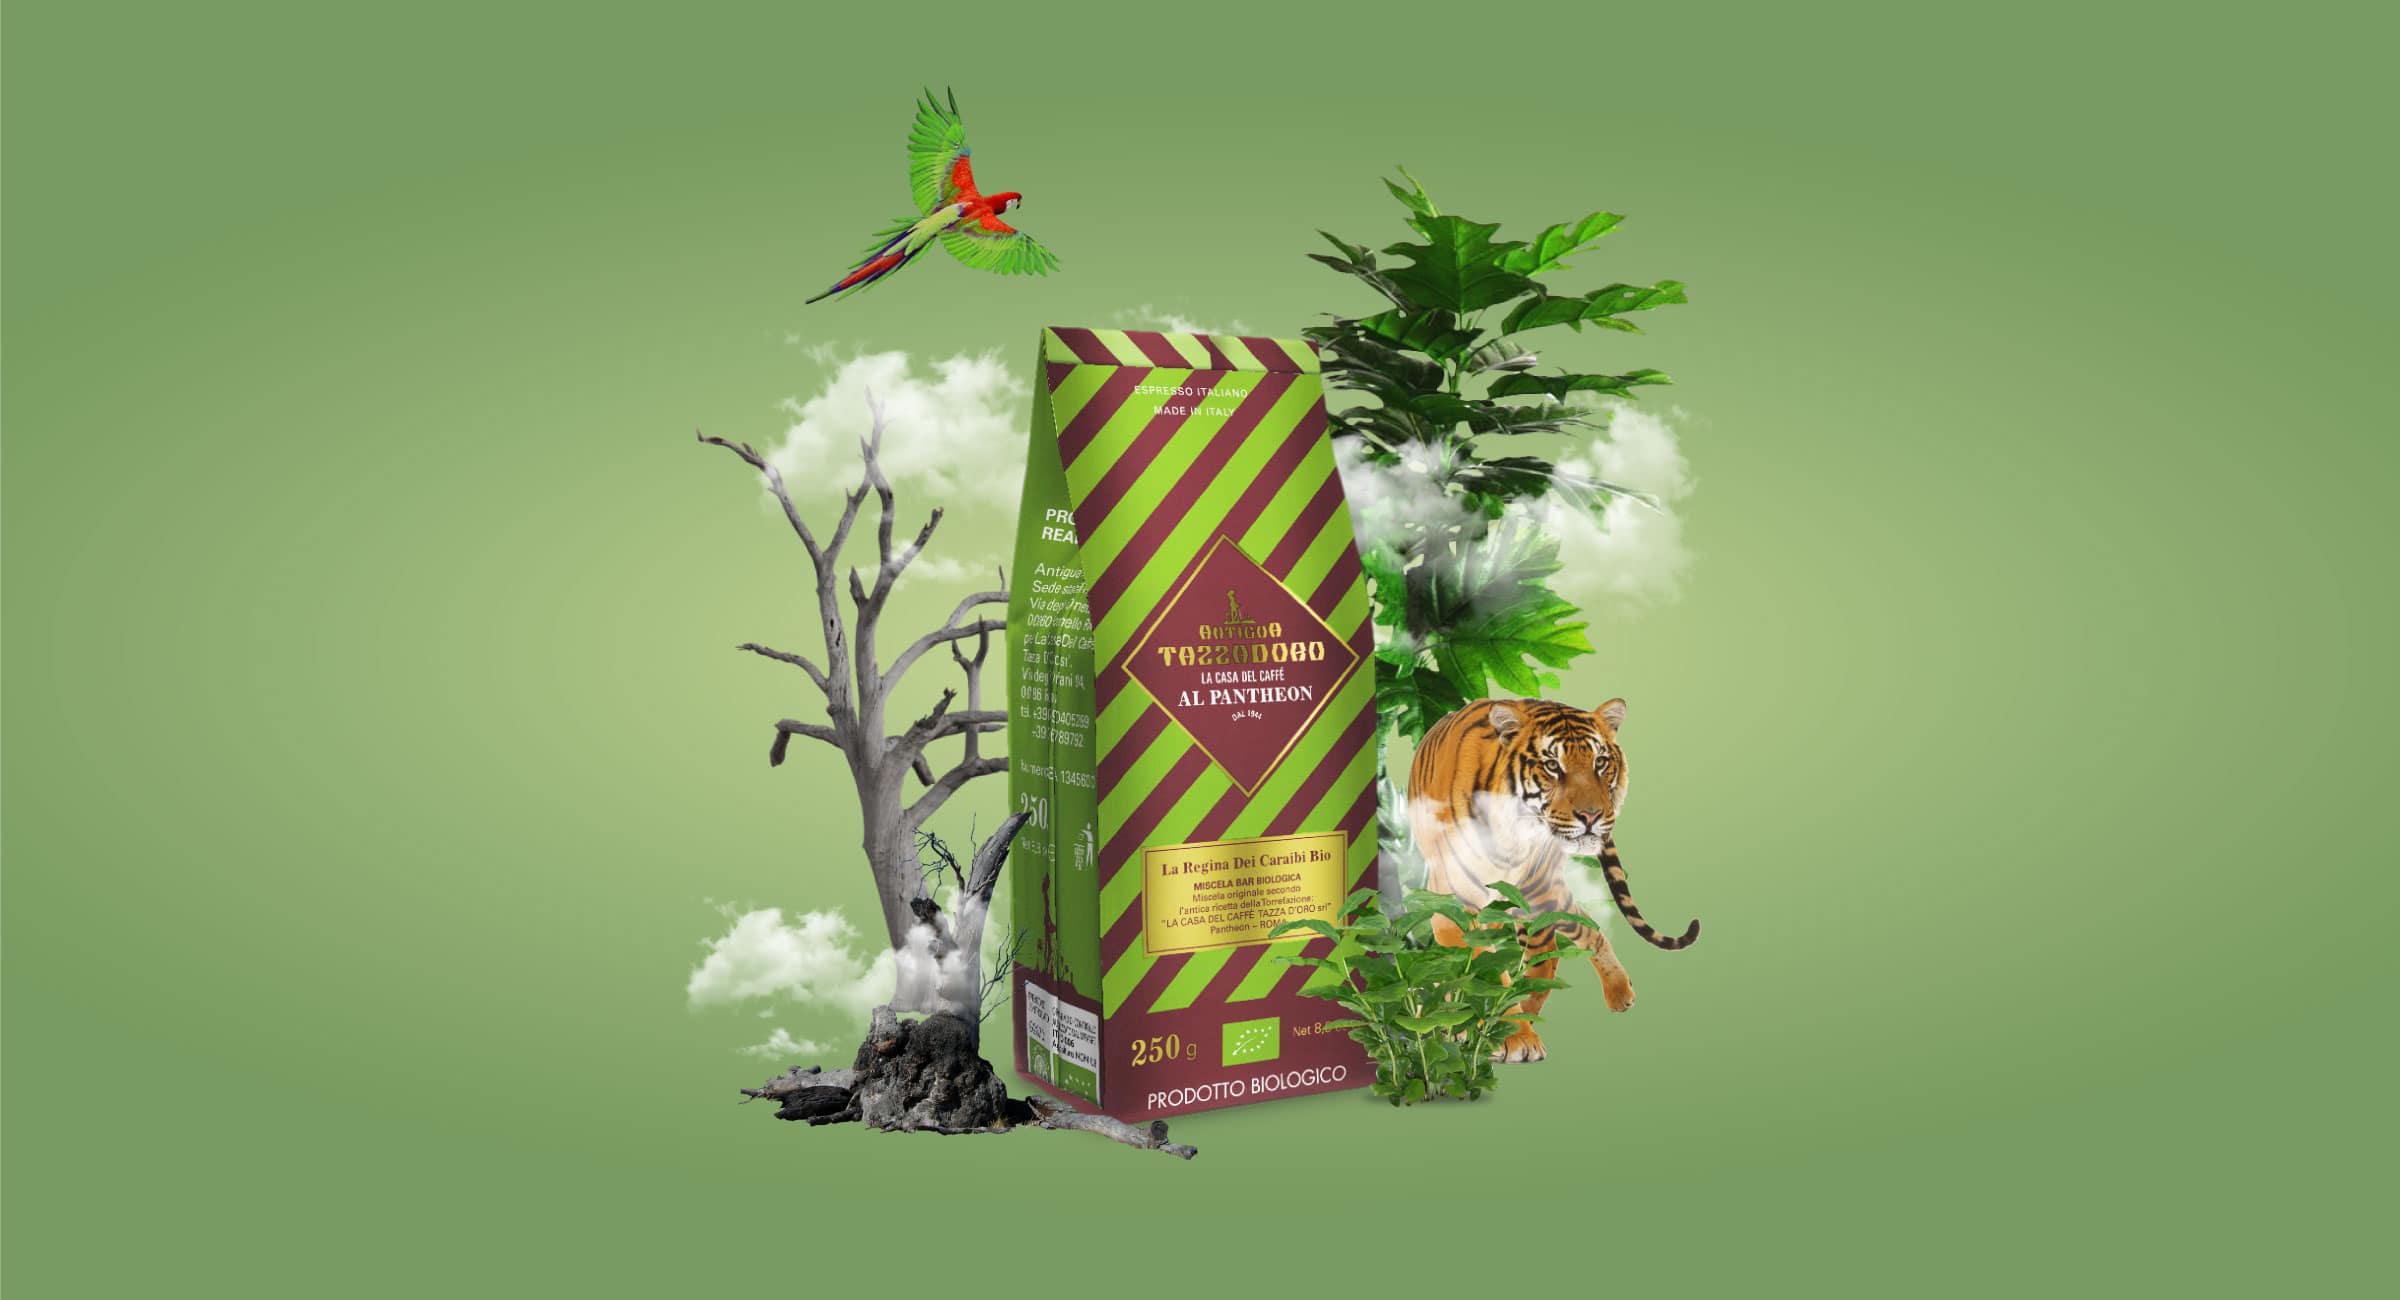 Composizione grafica di un pacchetto di caffè macinato con alberi, piante, una tigre, un pappagallo e nuvole.